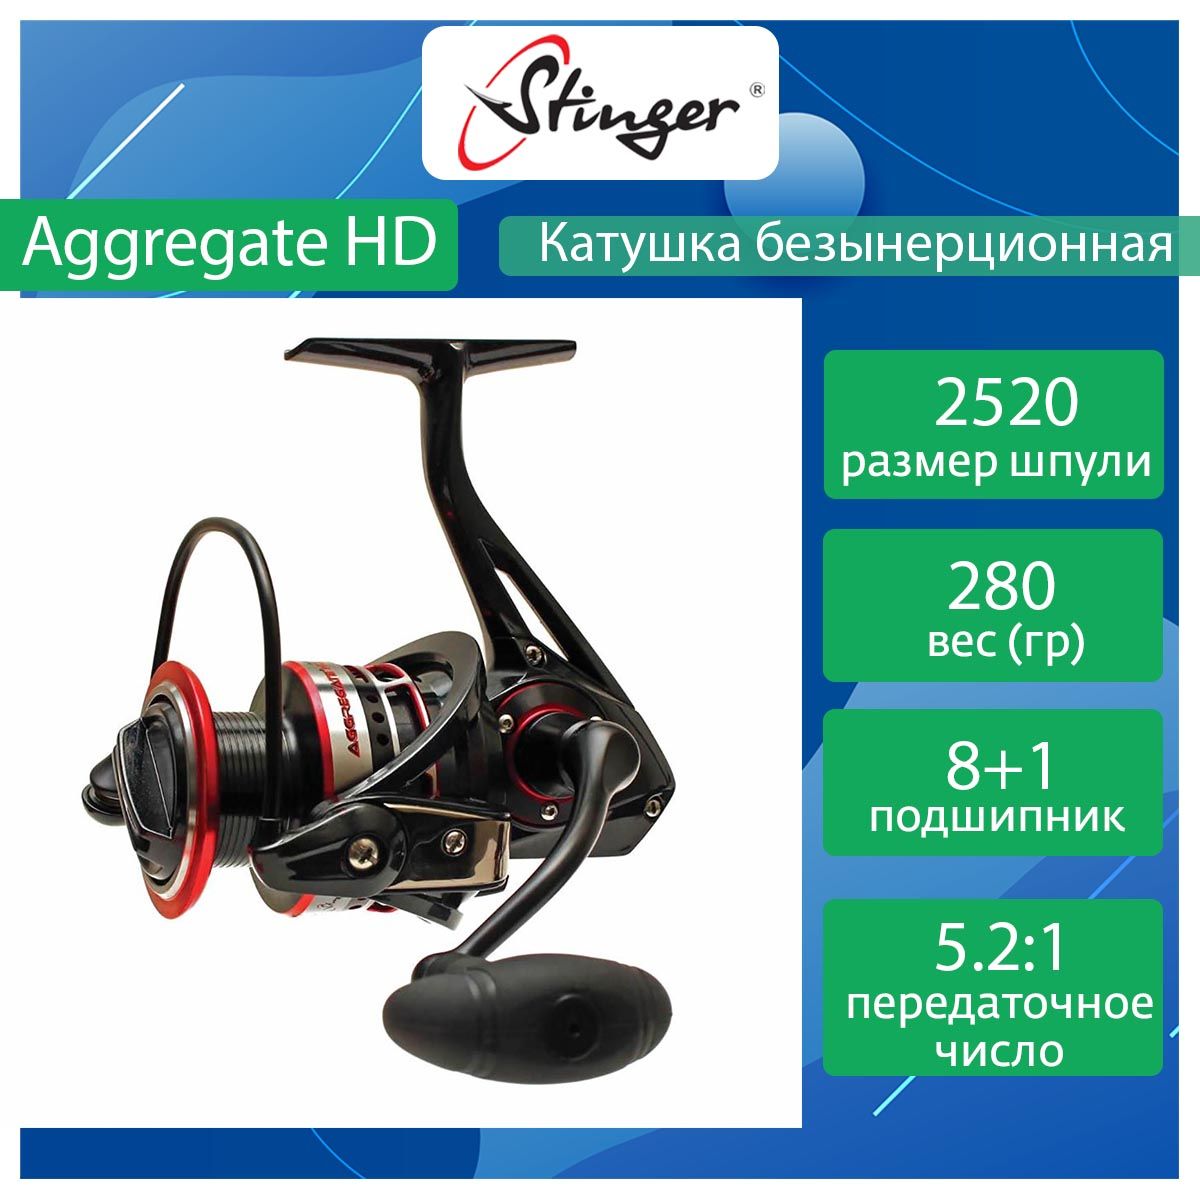 Катушка для рыбалки безынерционная Stinger Aggregate HD ef53267